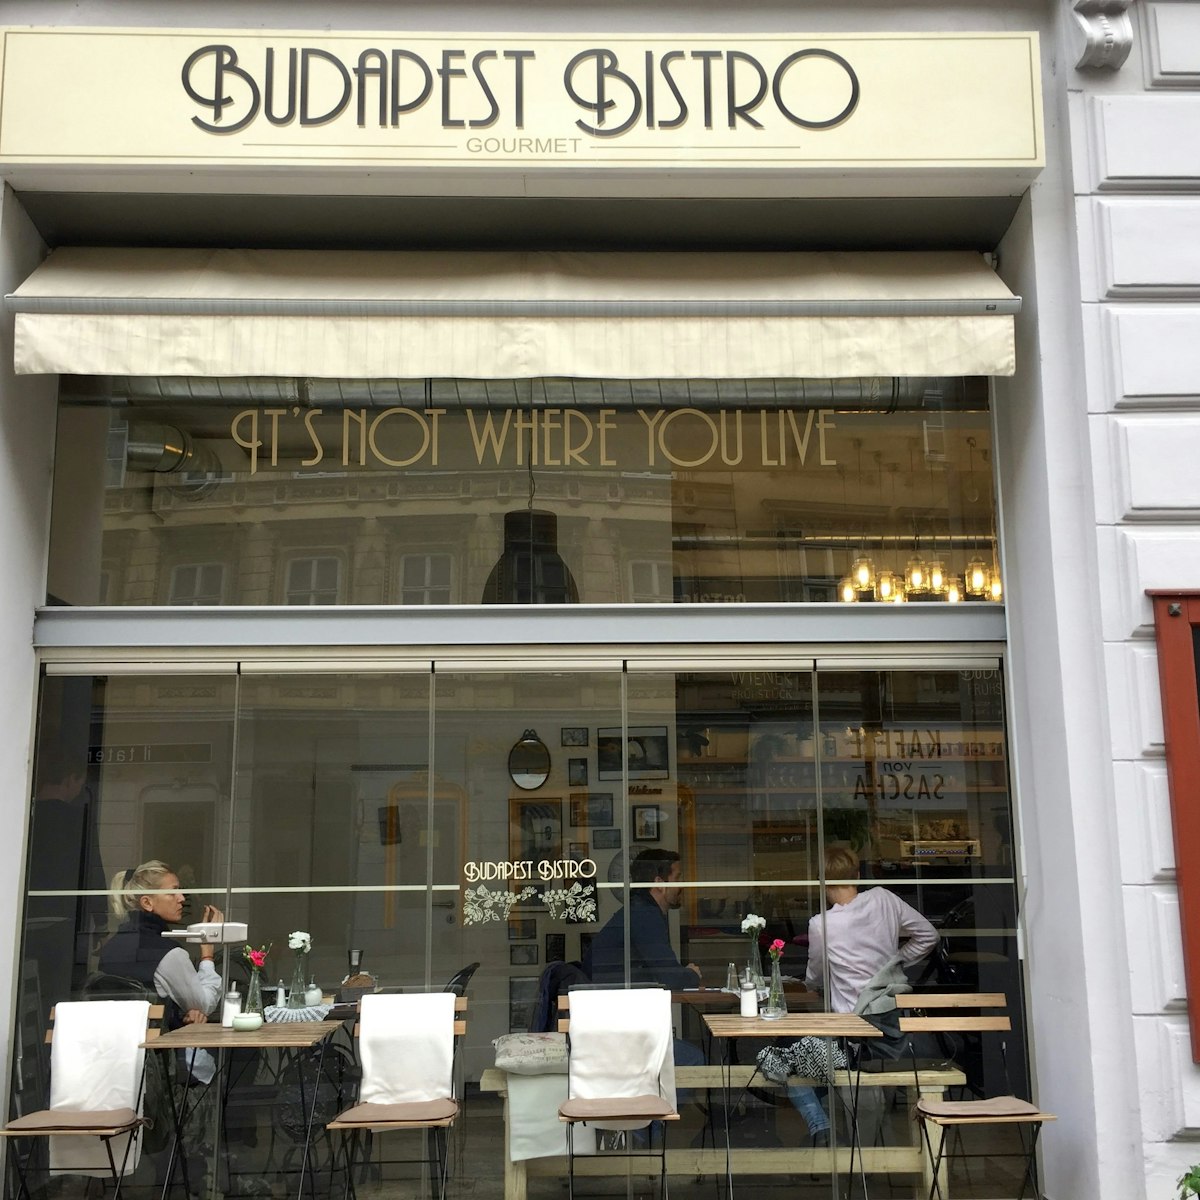 Storefront, Budapest Bistro Cafe